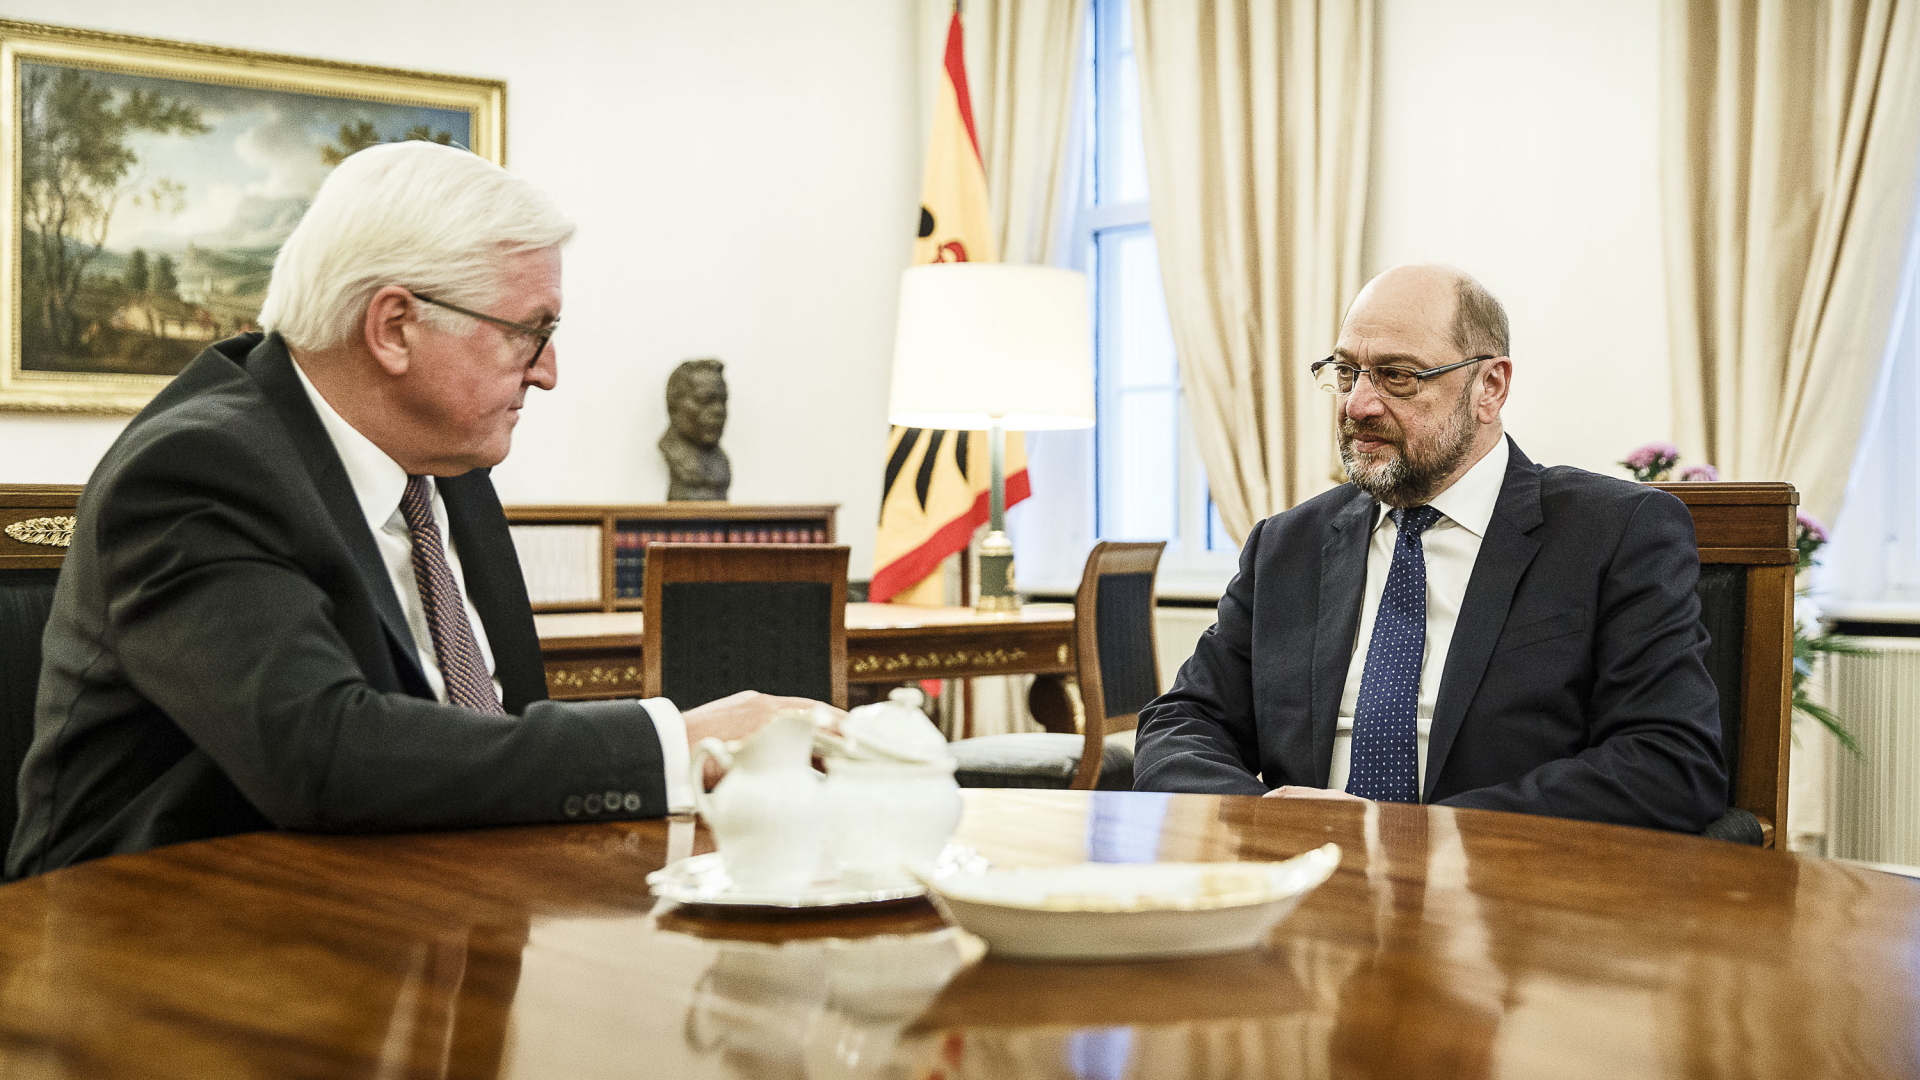 Bundespräsident Frank-Walter Steinmeier, links, mit SPD-Chef Martin Schulz. | dpa